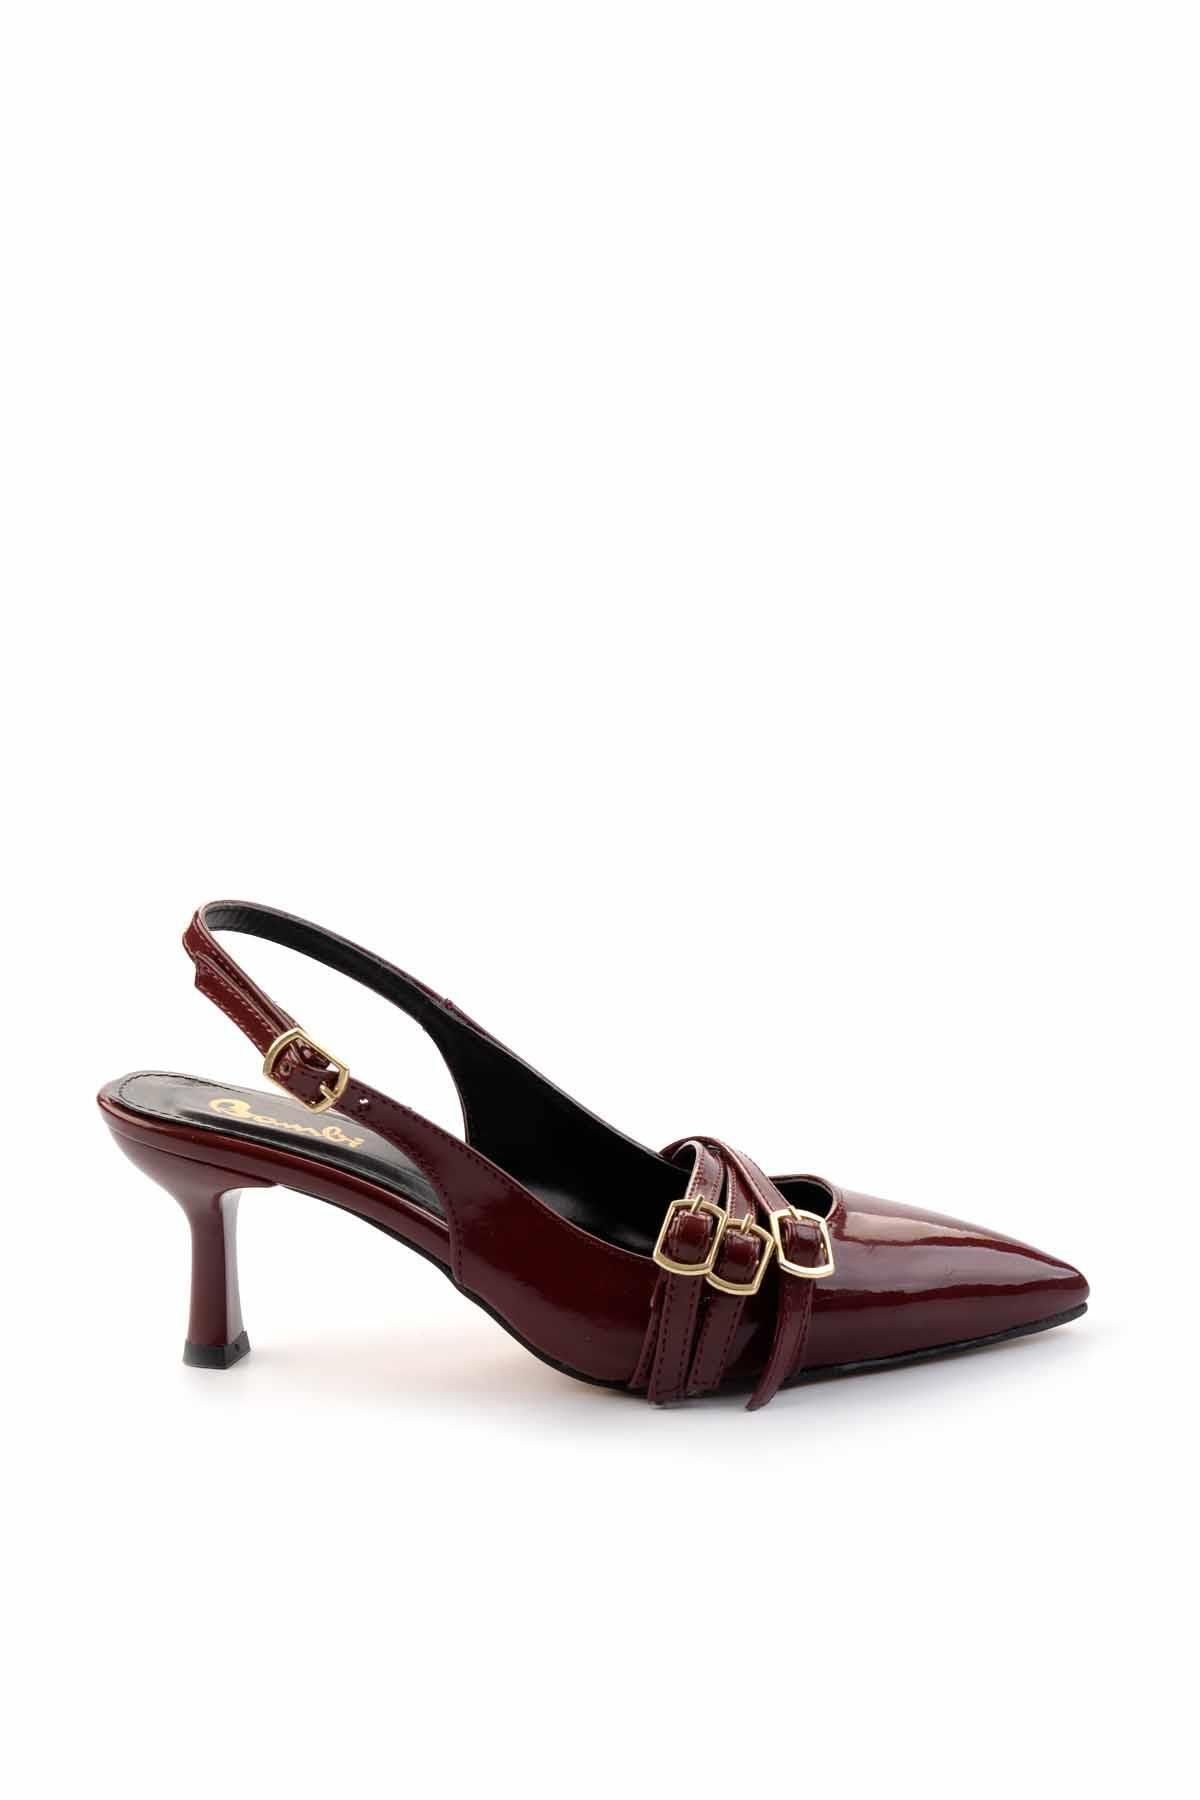 Bambi Bordo Rugan   Kadın Klasik Topuklu Ayakkabı K01206011108